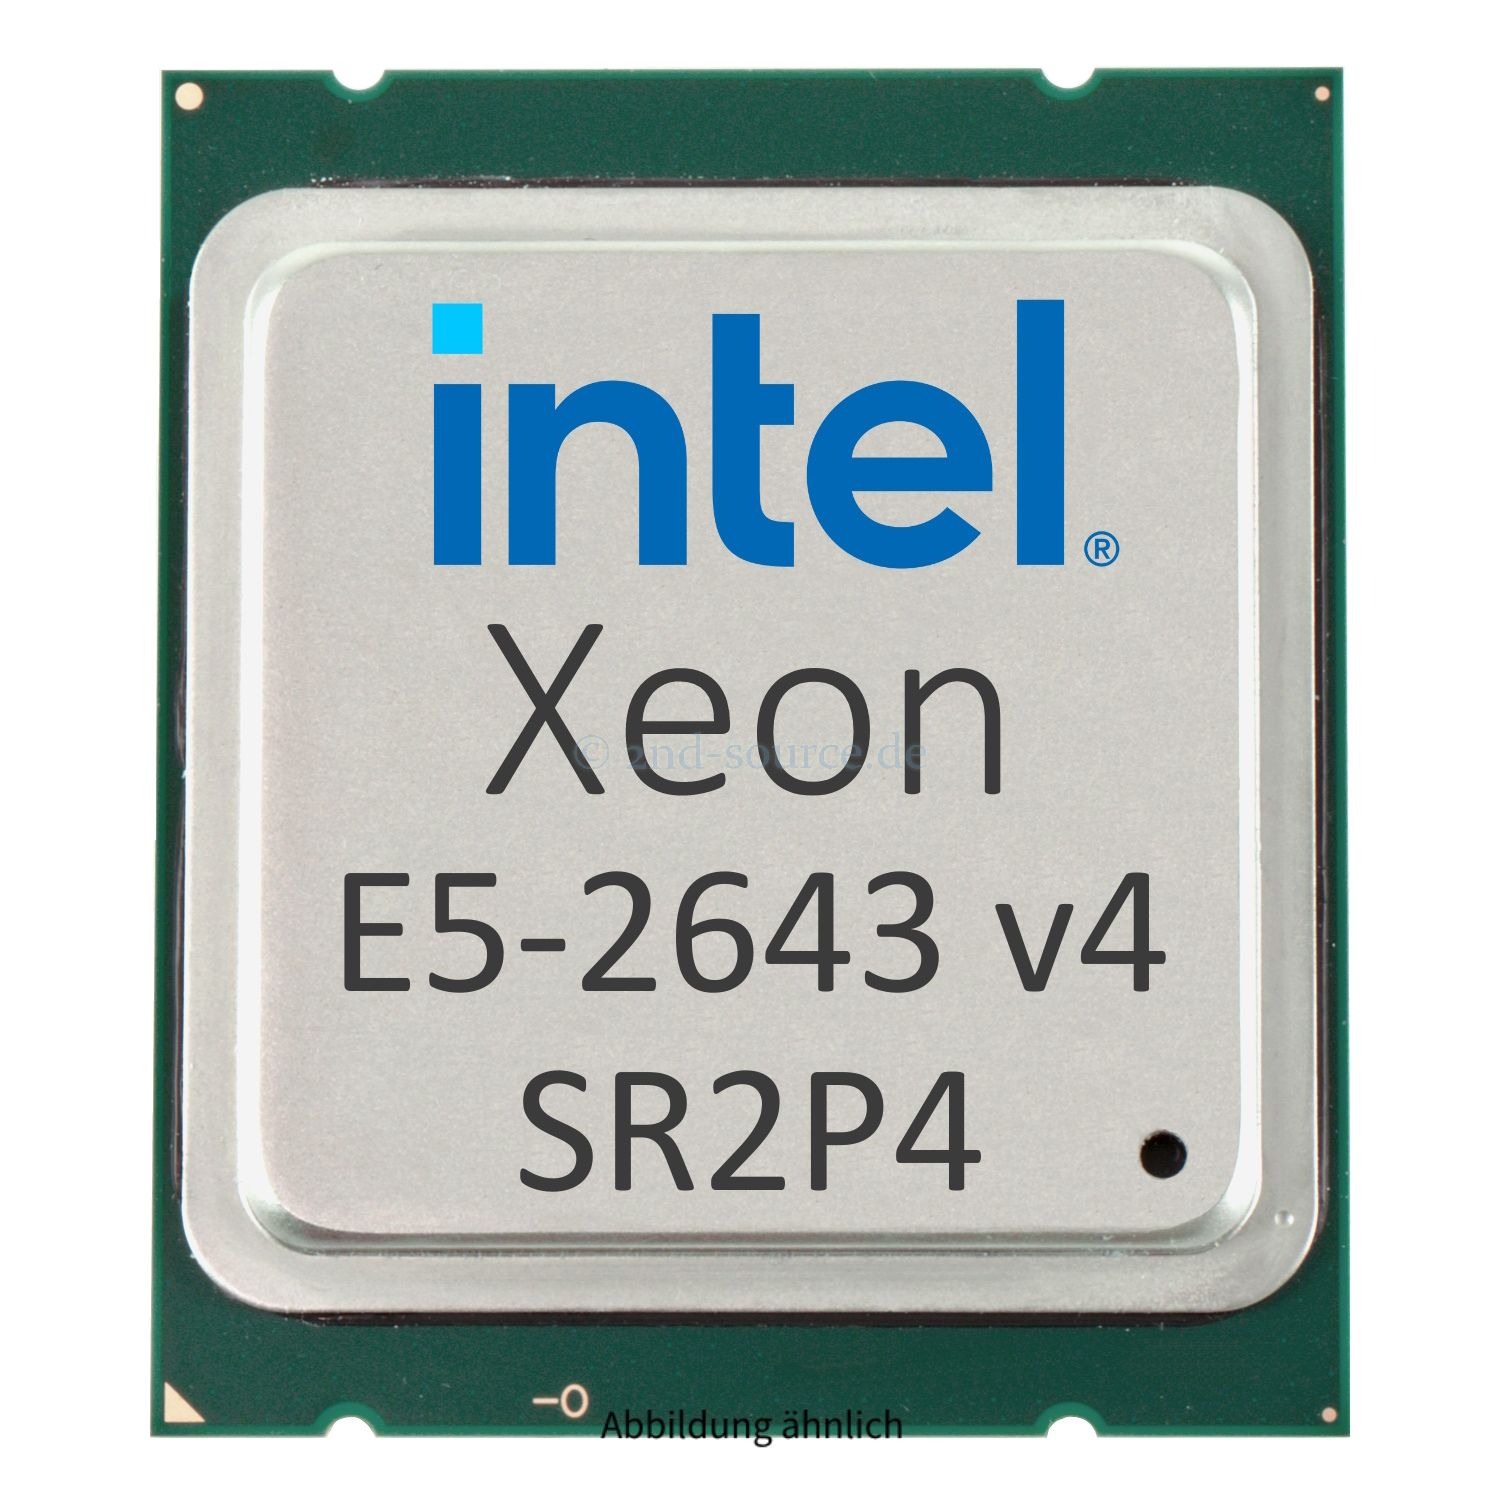 Intel Xeon E5-2643 v4 3.40GHz 20MB 6-Core CPU 135W SR2P4 CM8066002041500